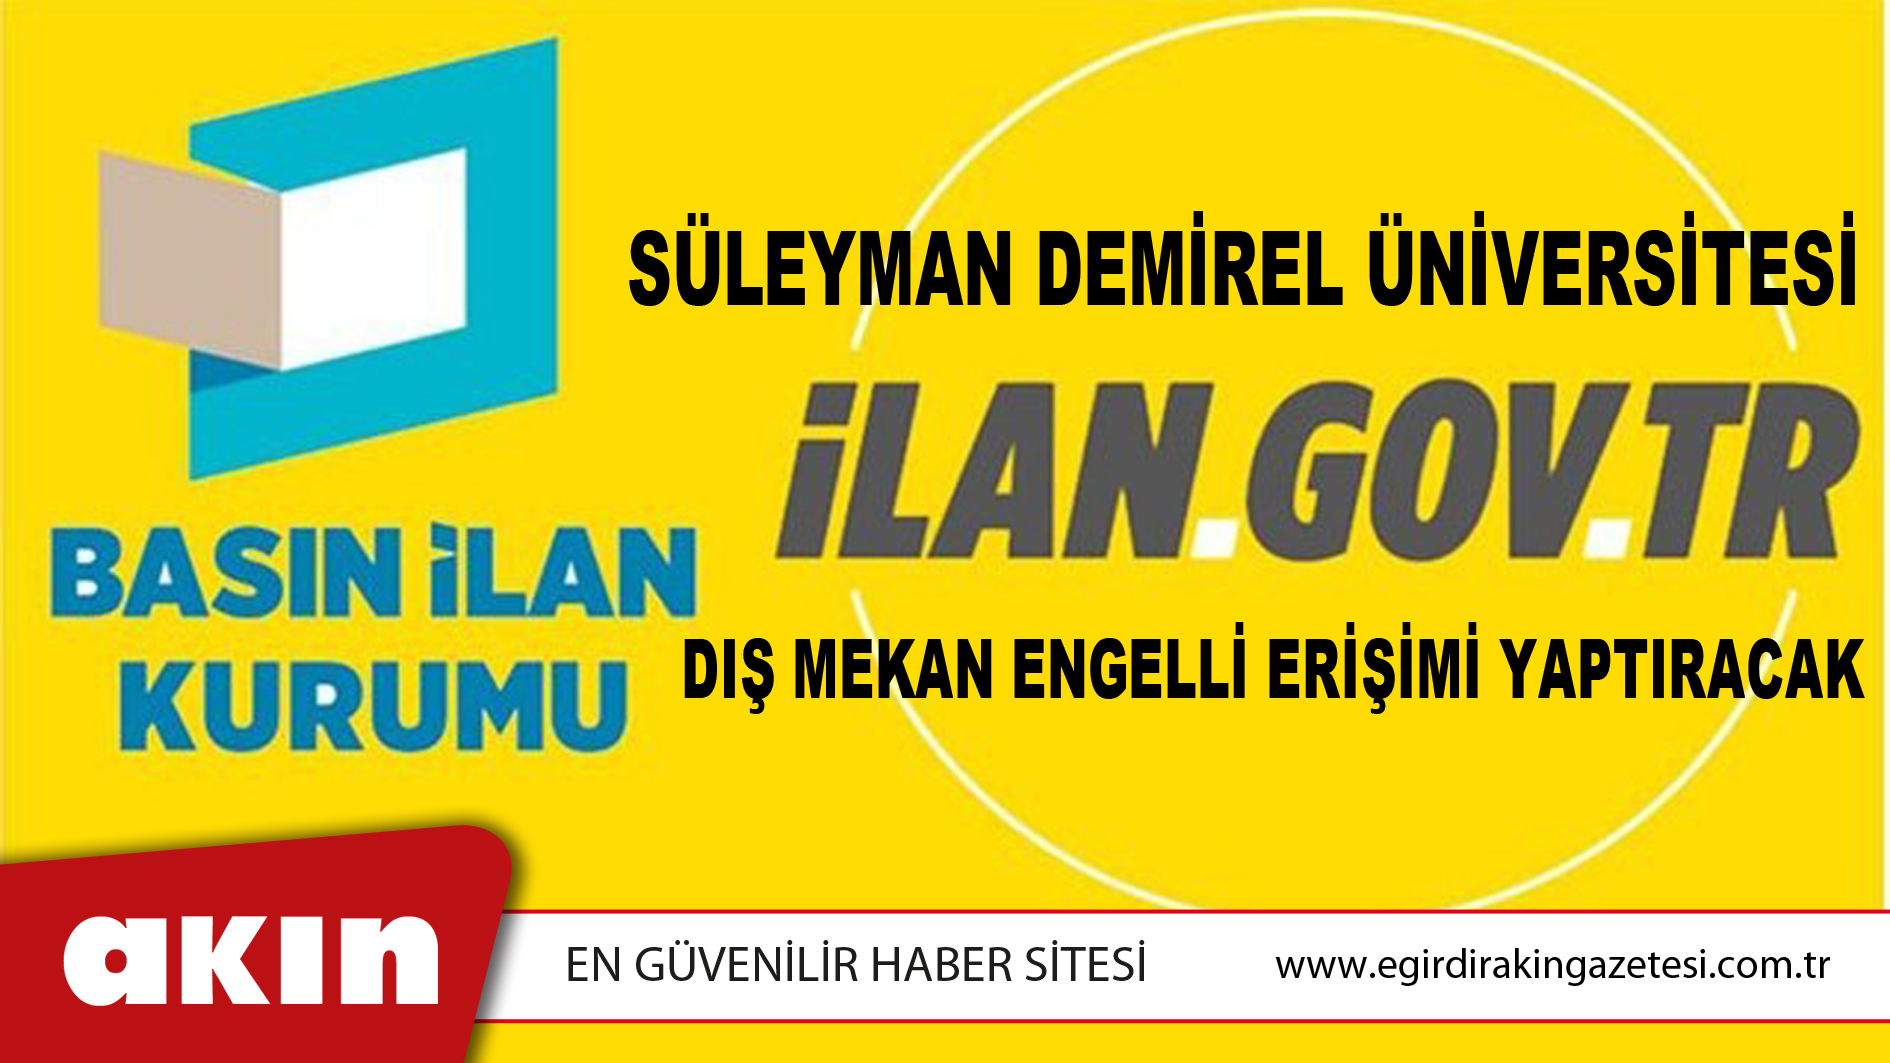 eğirdir haber,akın gazetesi,egirdir haberler,son dakika,Süleyman Demirel Üniversitesi Dış Mekan Engelli Erişimi Yaptıracak